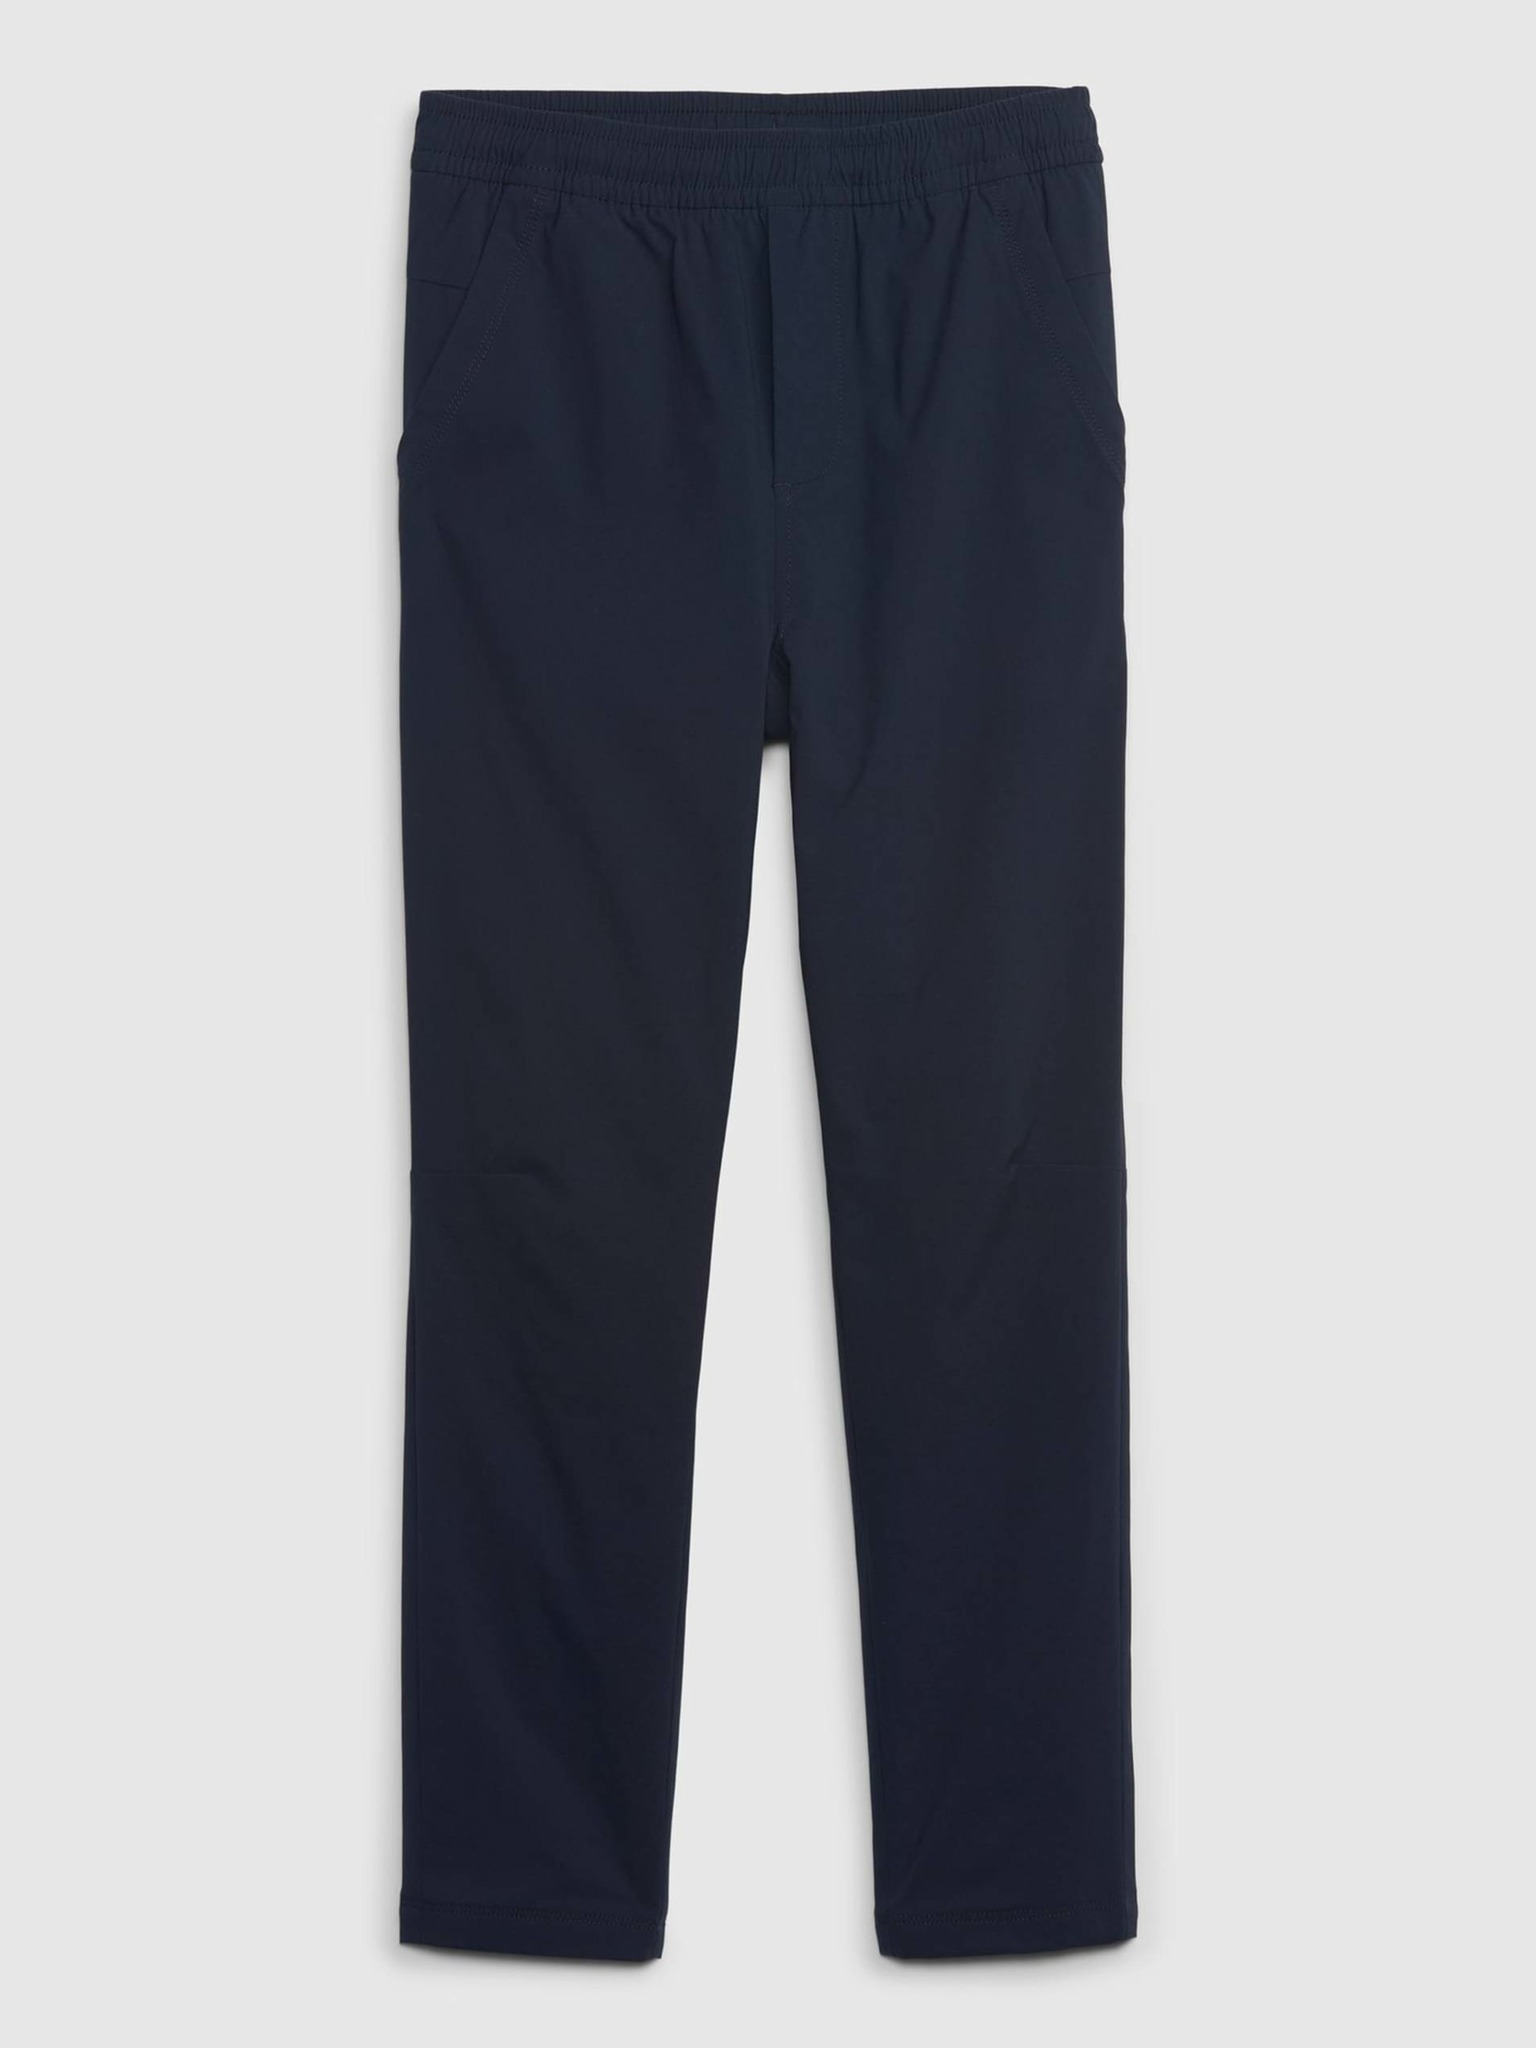 Fotografie Tmavě modré klučičí kalhoty zateplené GAP - 140-146